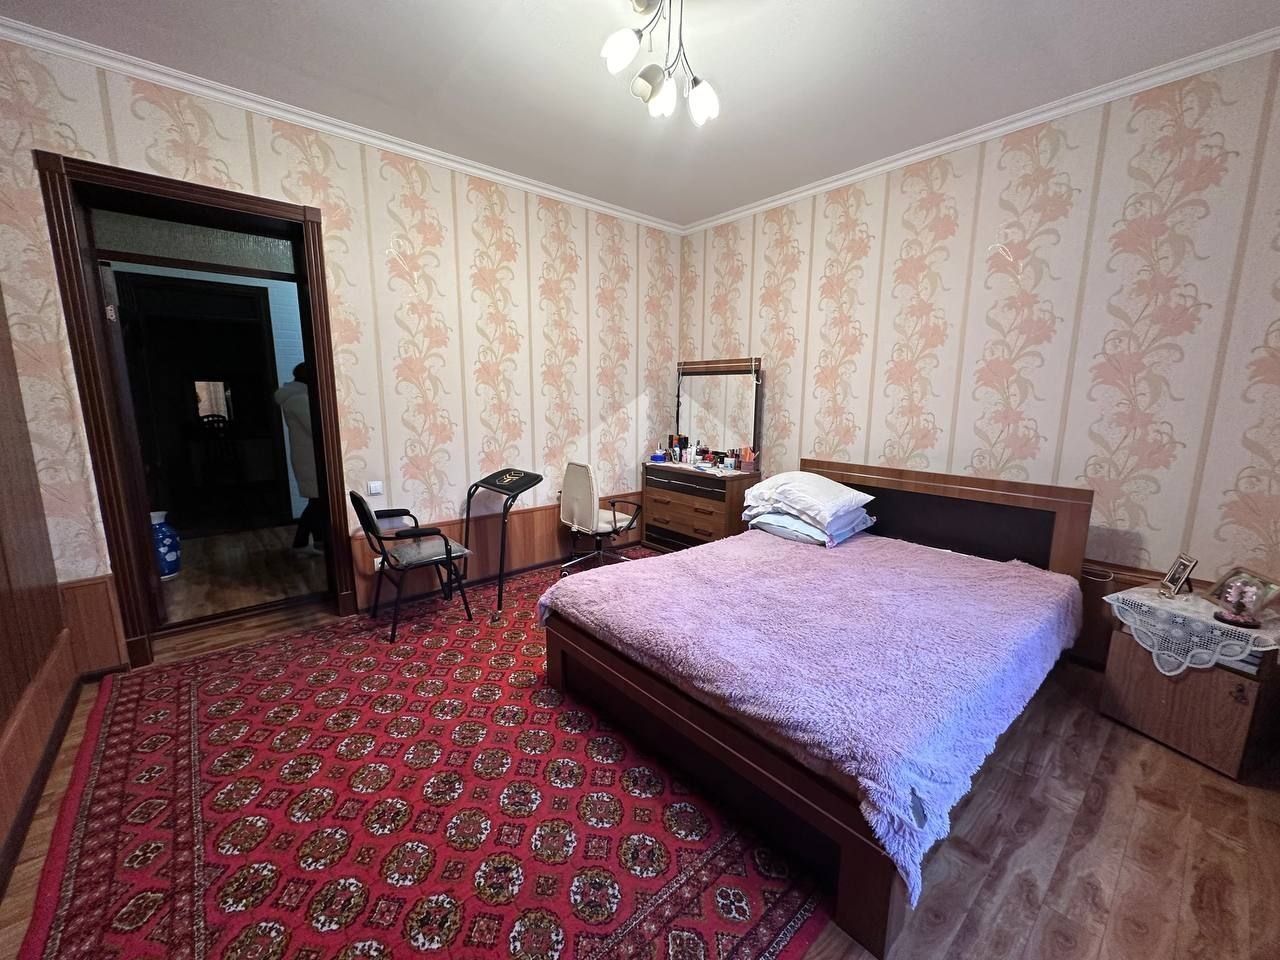 Продаётся дом 3,68 соток по ул. Ц. Луначарского